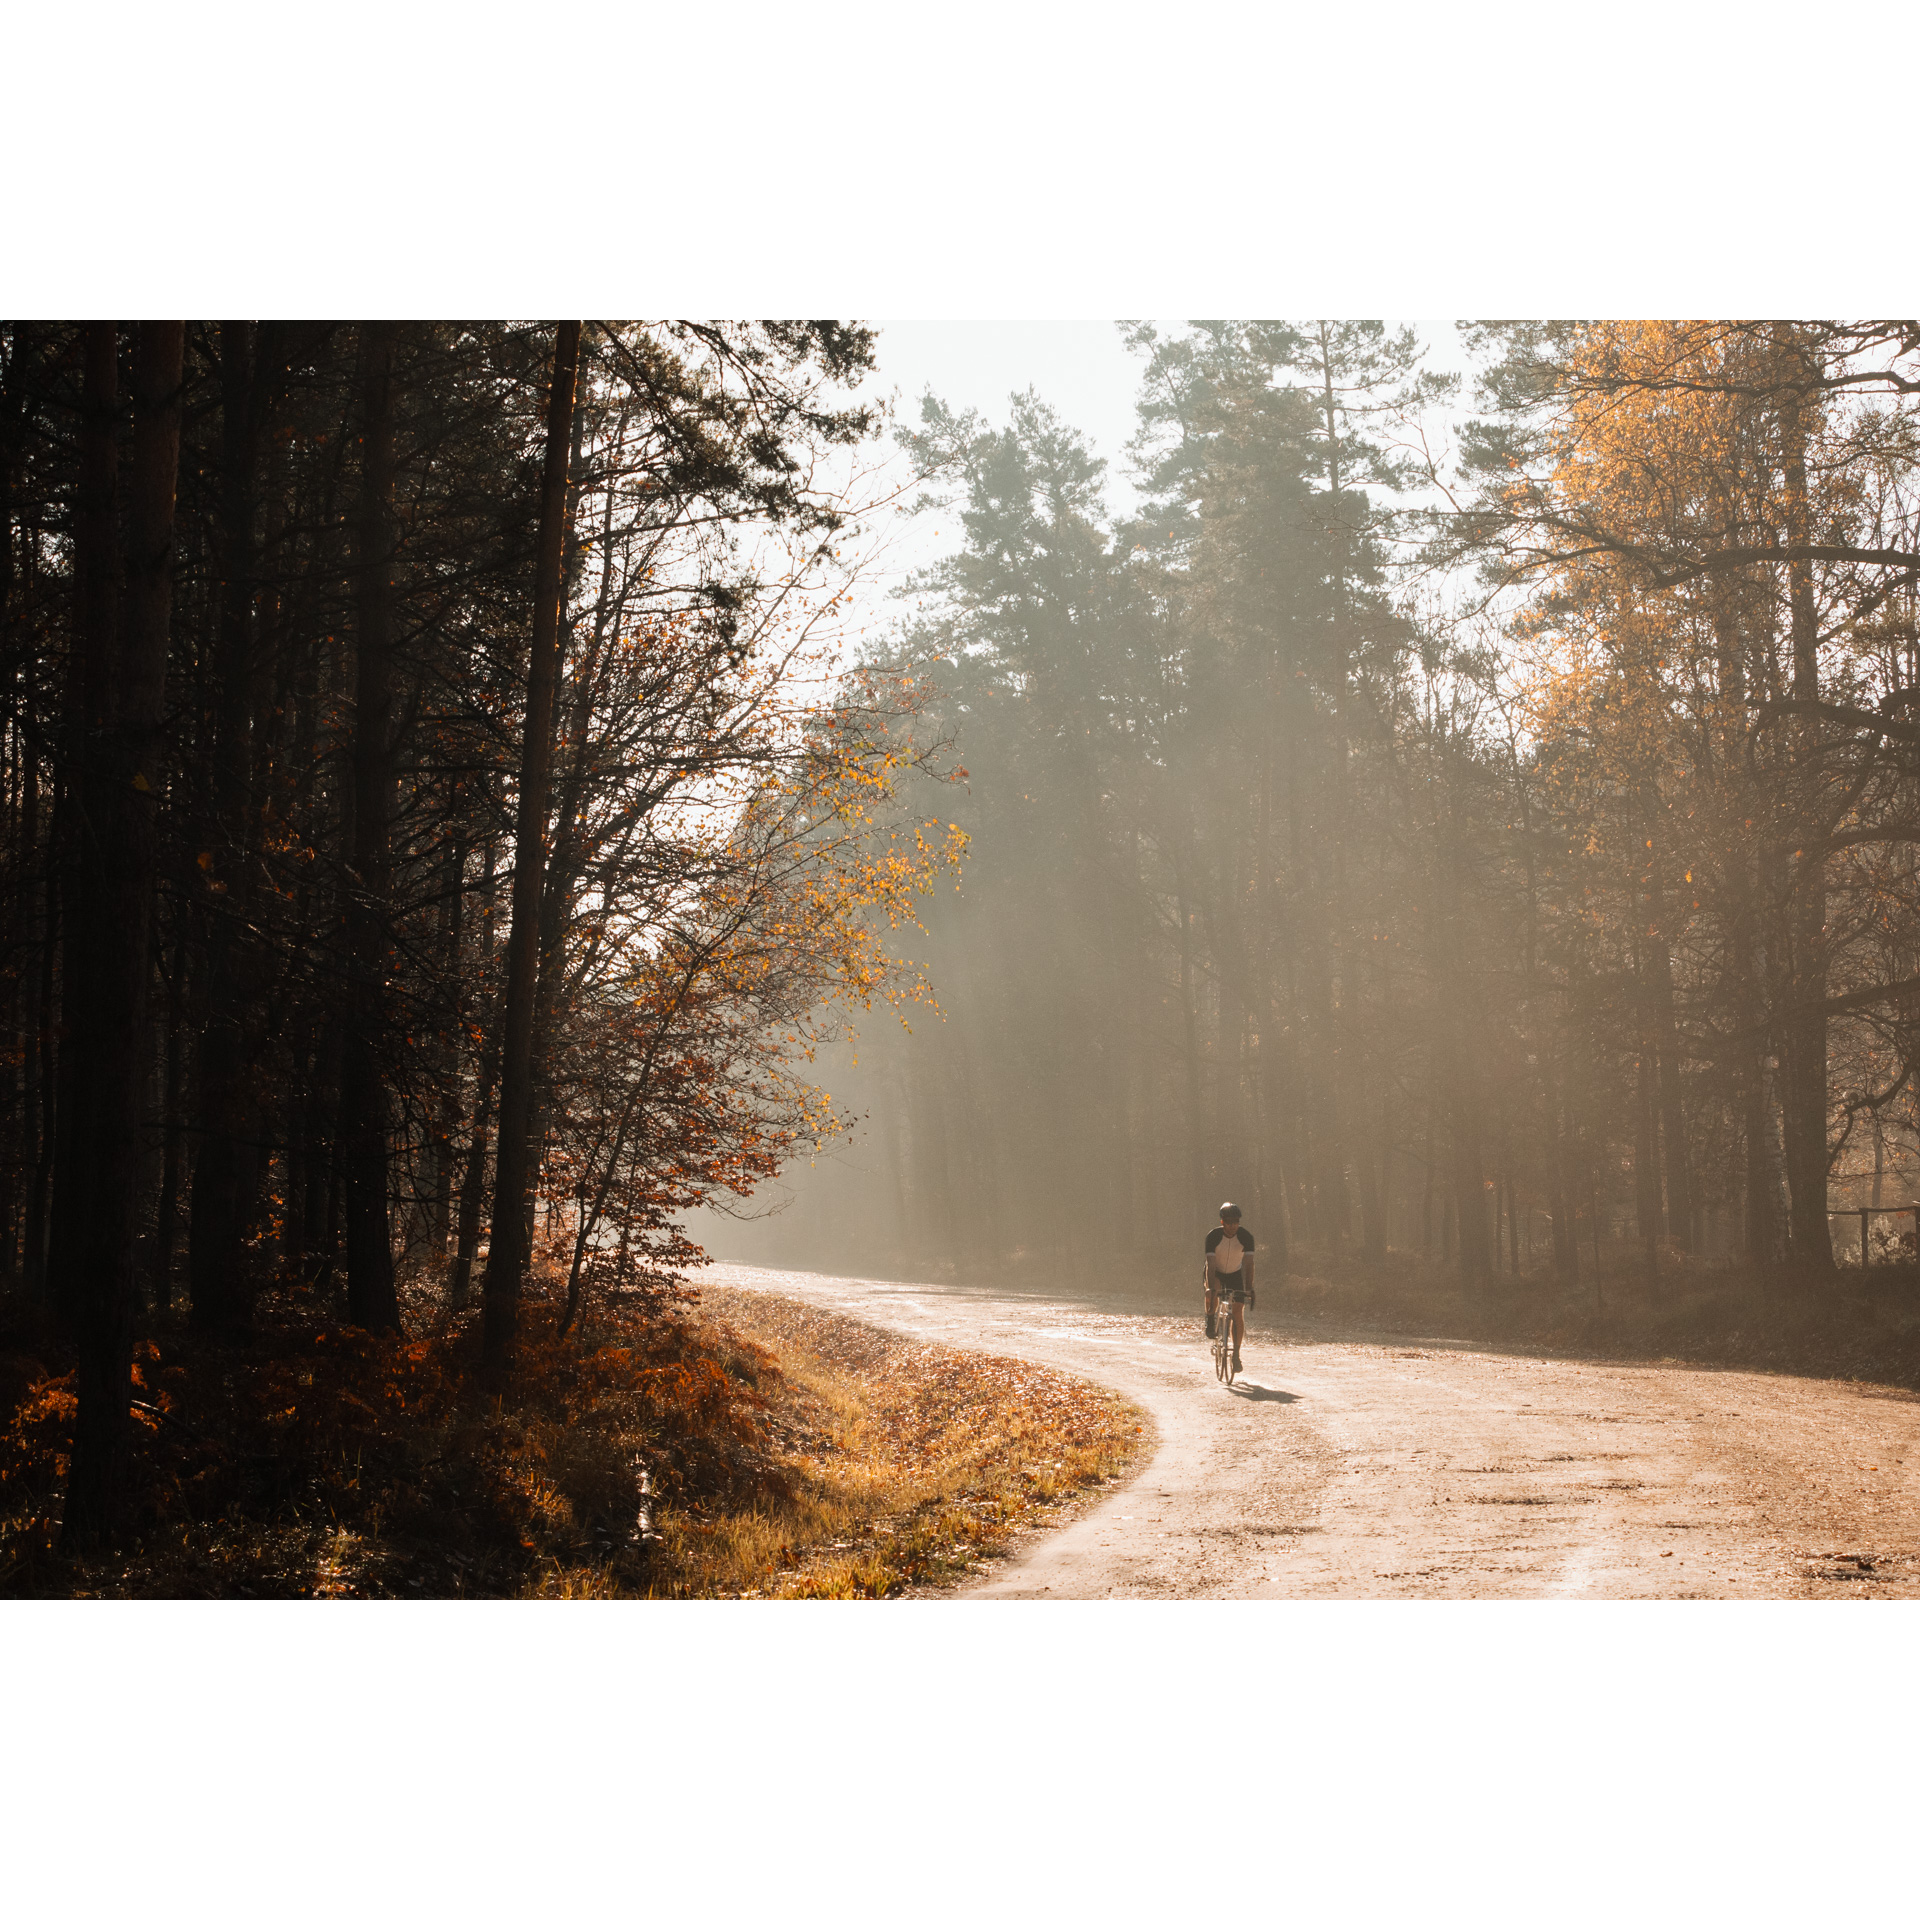 Rowerzysta w biało-czarnym stroju jadący utwardzoną drogą przez jesienny las w mglistą pogodę